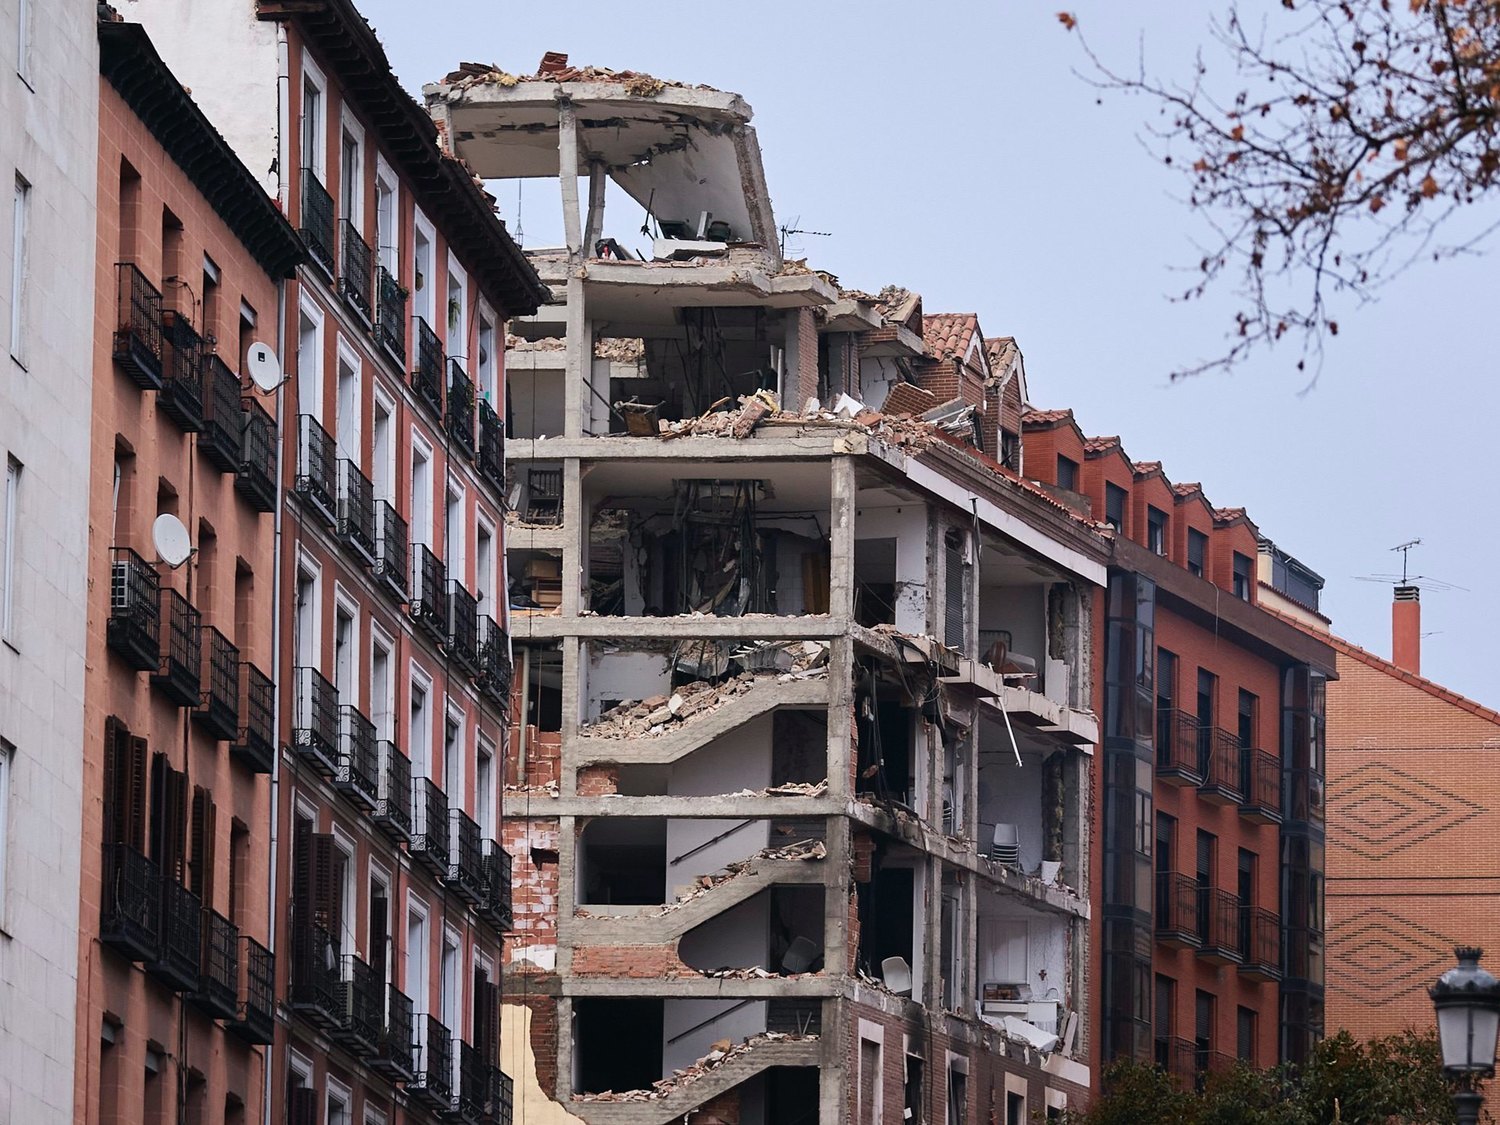 Archivada la investigación de la explosión de la calle Toledo (Madrid) al considerarla accidental